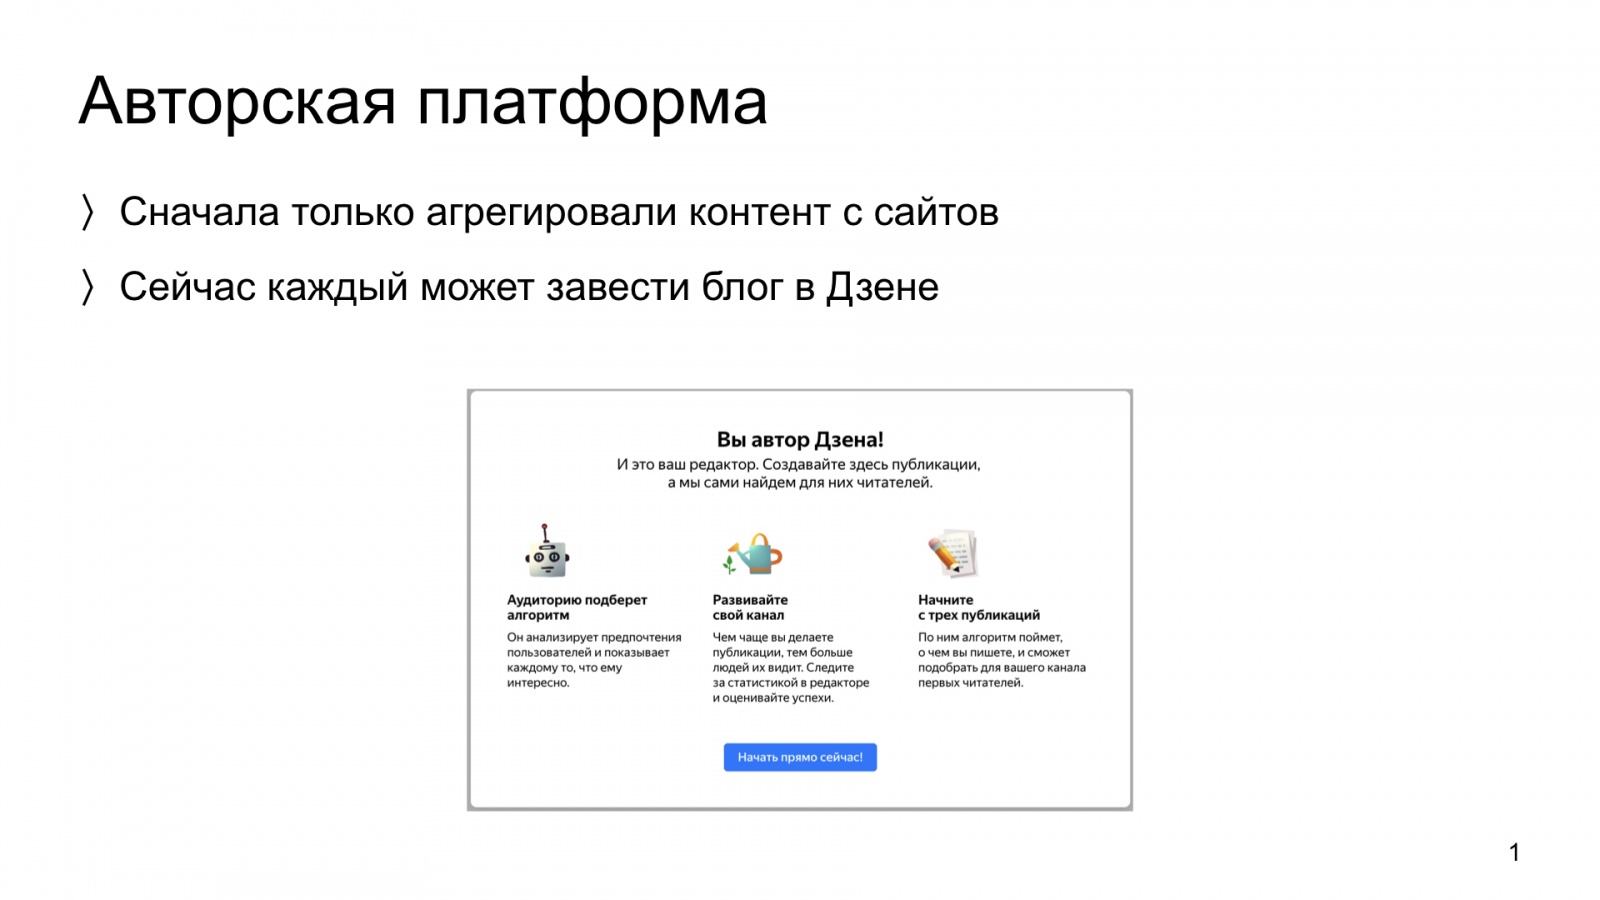 Автороцентричное ранжирование. Доклад Яндекса о поиске релевантной аудитории для авторов Дзена - 1